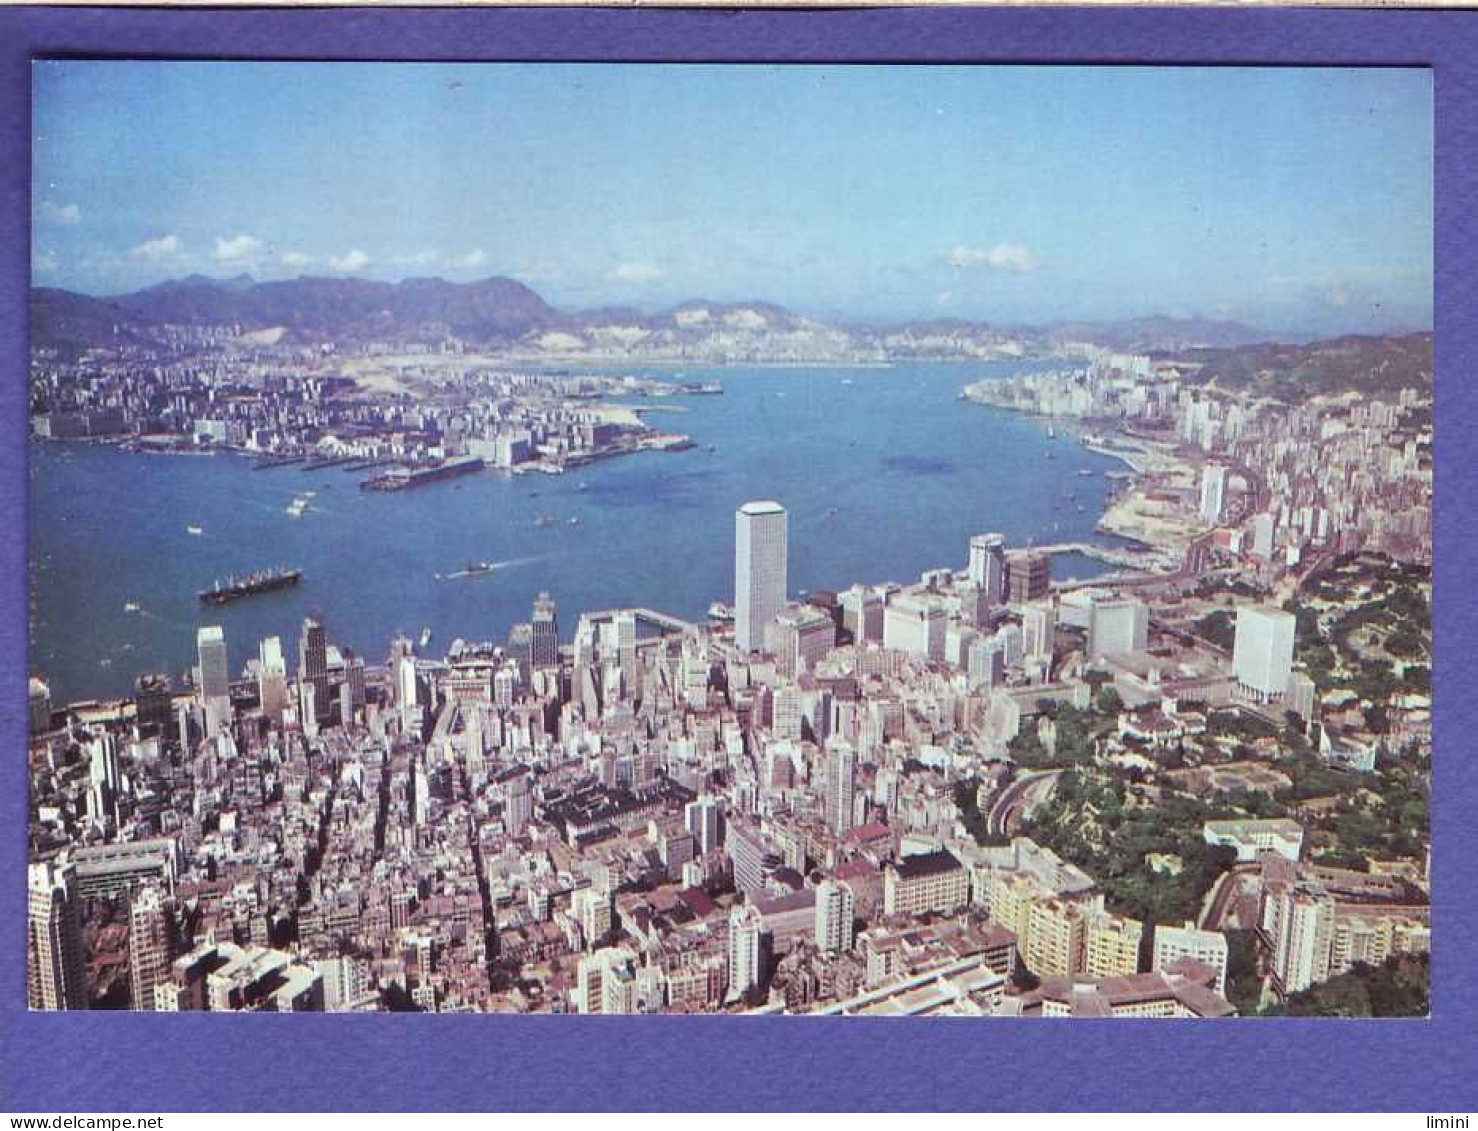 HONG KONG - KOWLOON FROM THE PEAK -  - China (Hongkong)